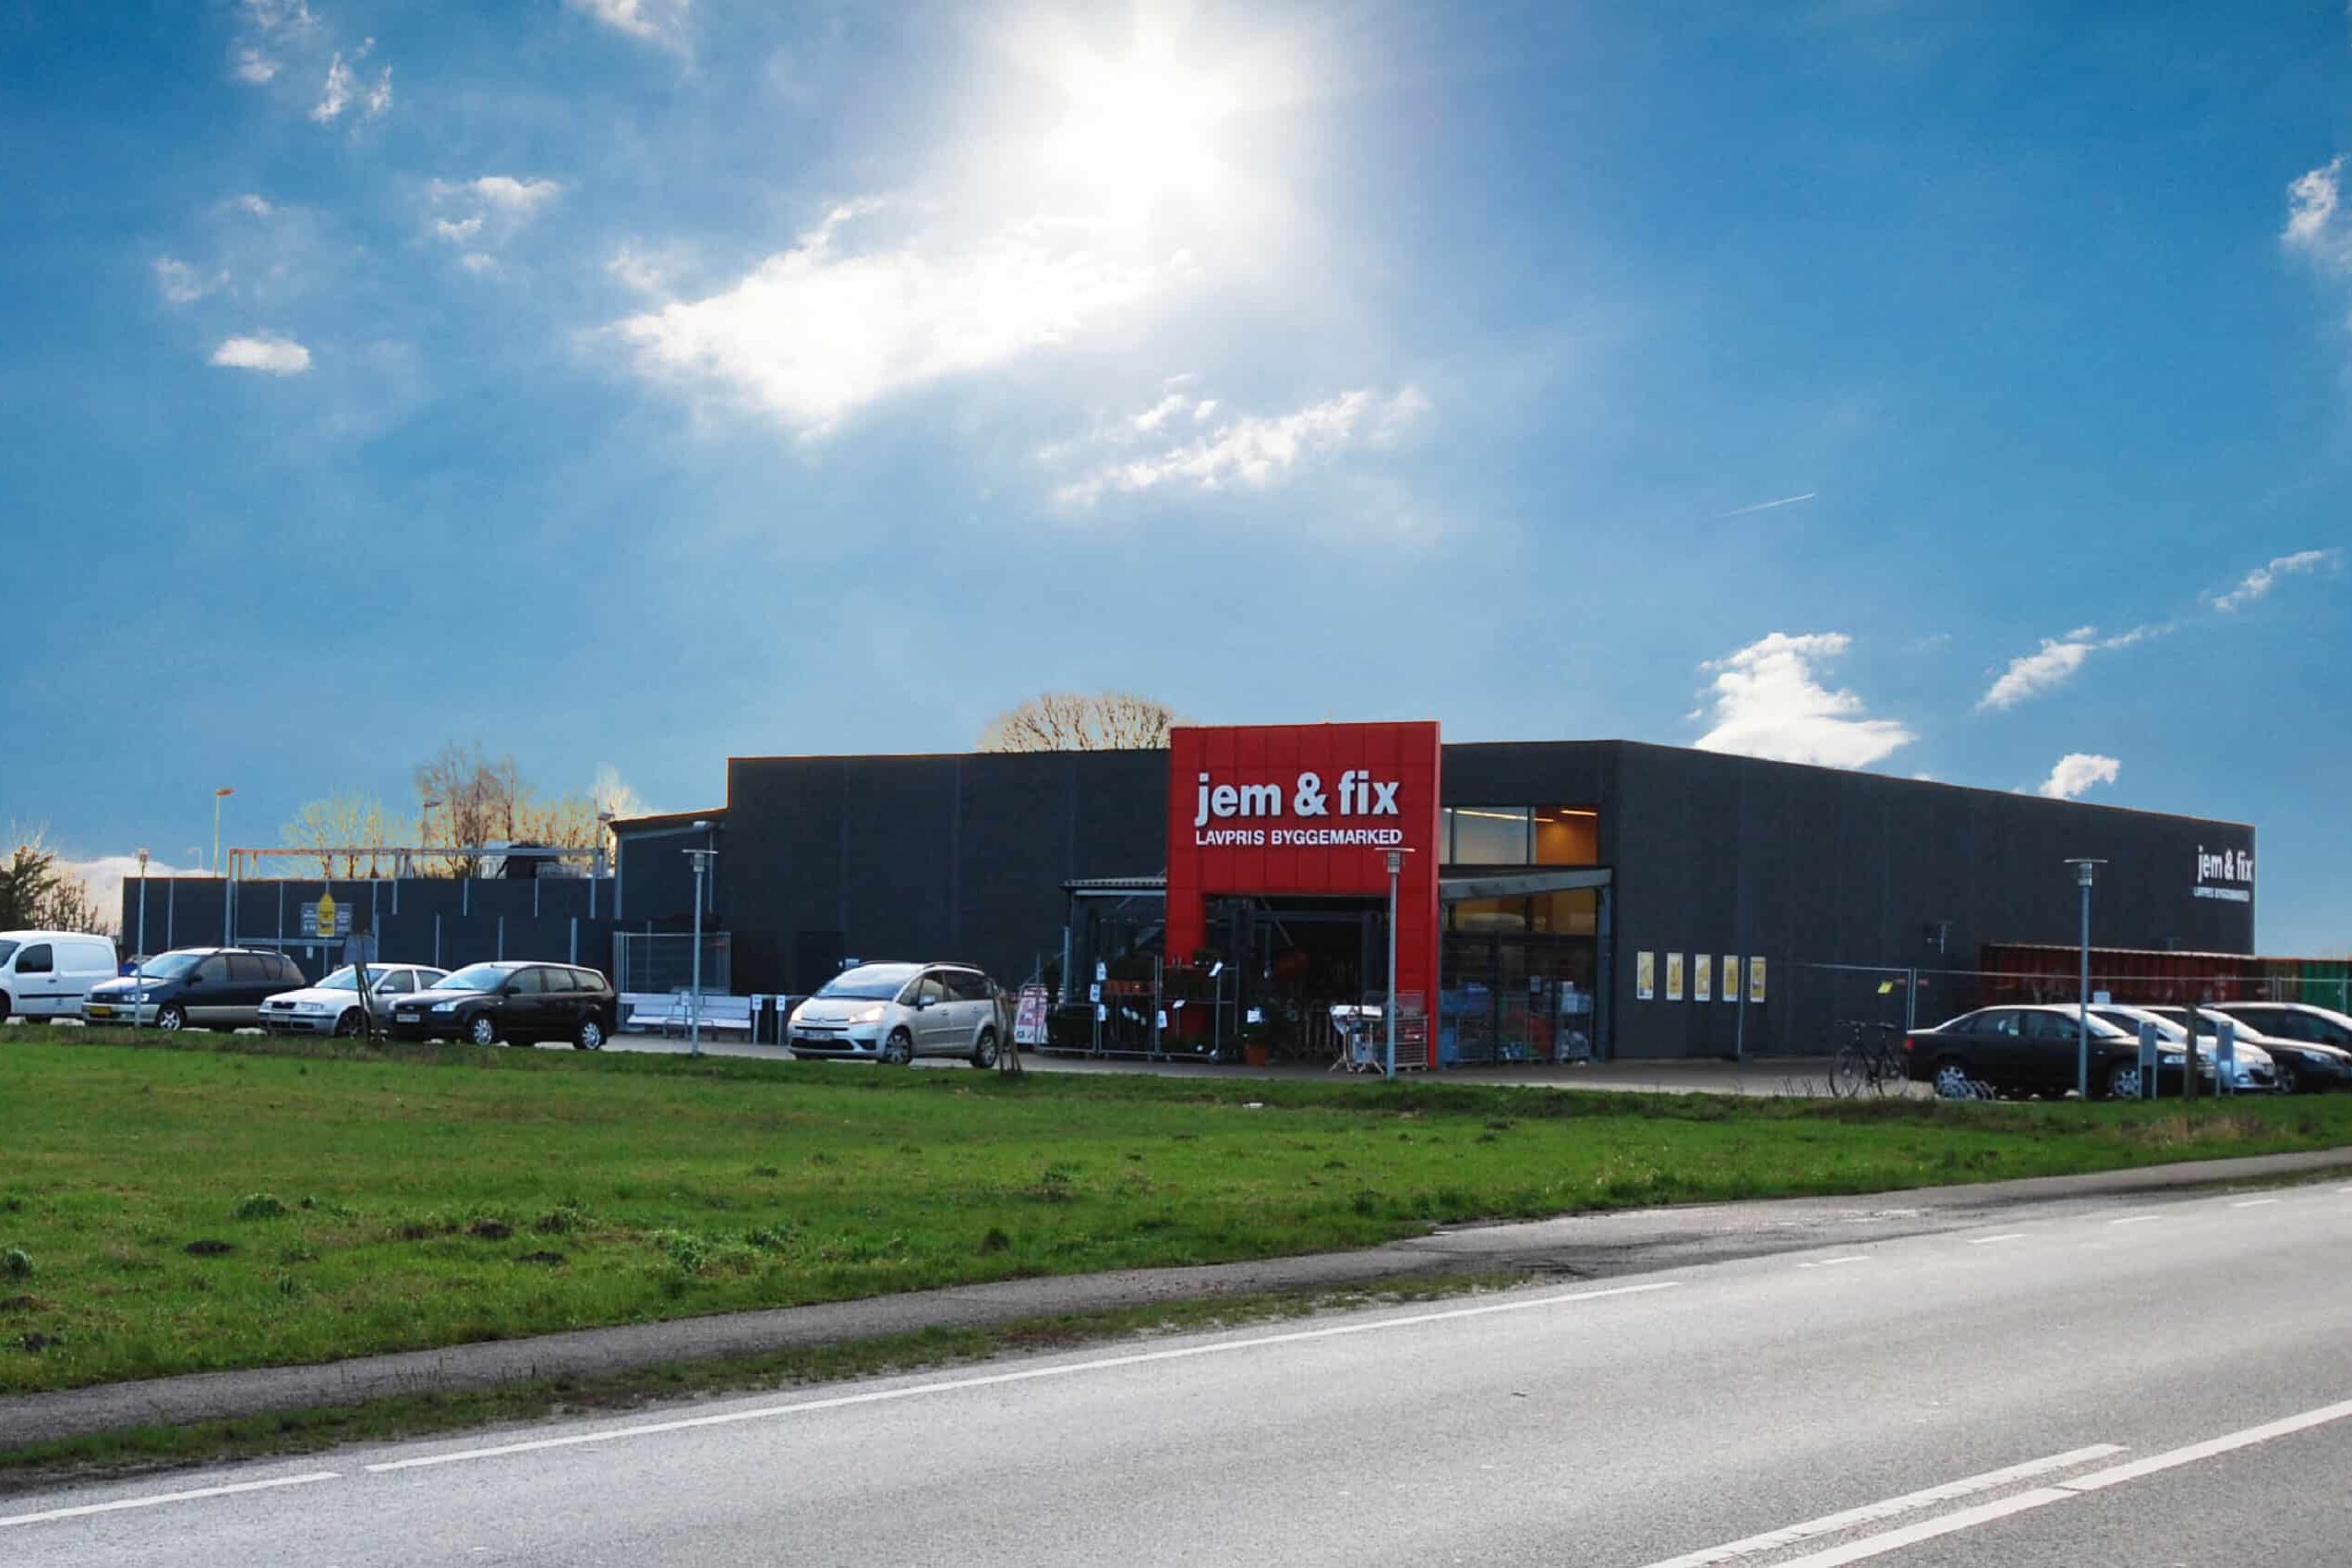 Ejendomsinvestering med jem&fix som lejer beliggende ved Aarhus på adressen Erhvervsparken Klank 5 Galten 8464.